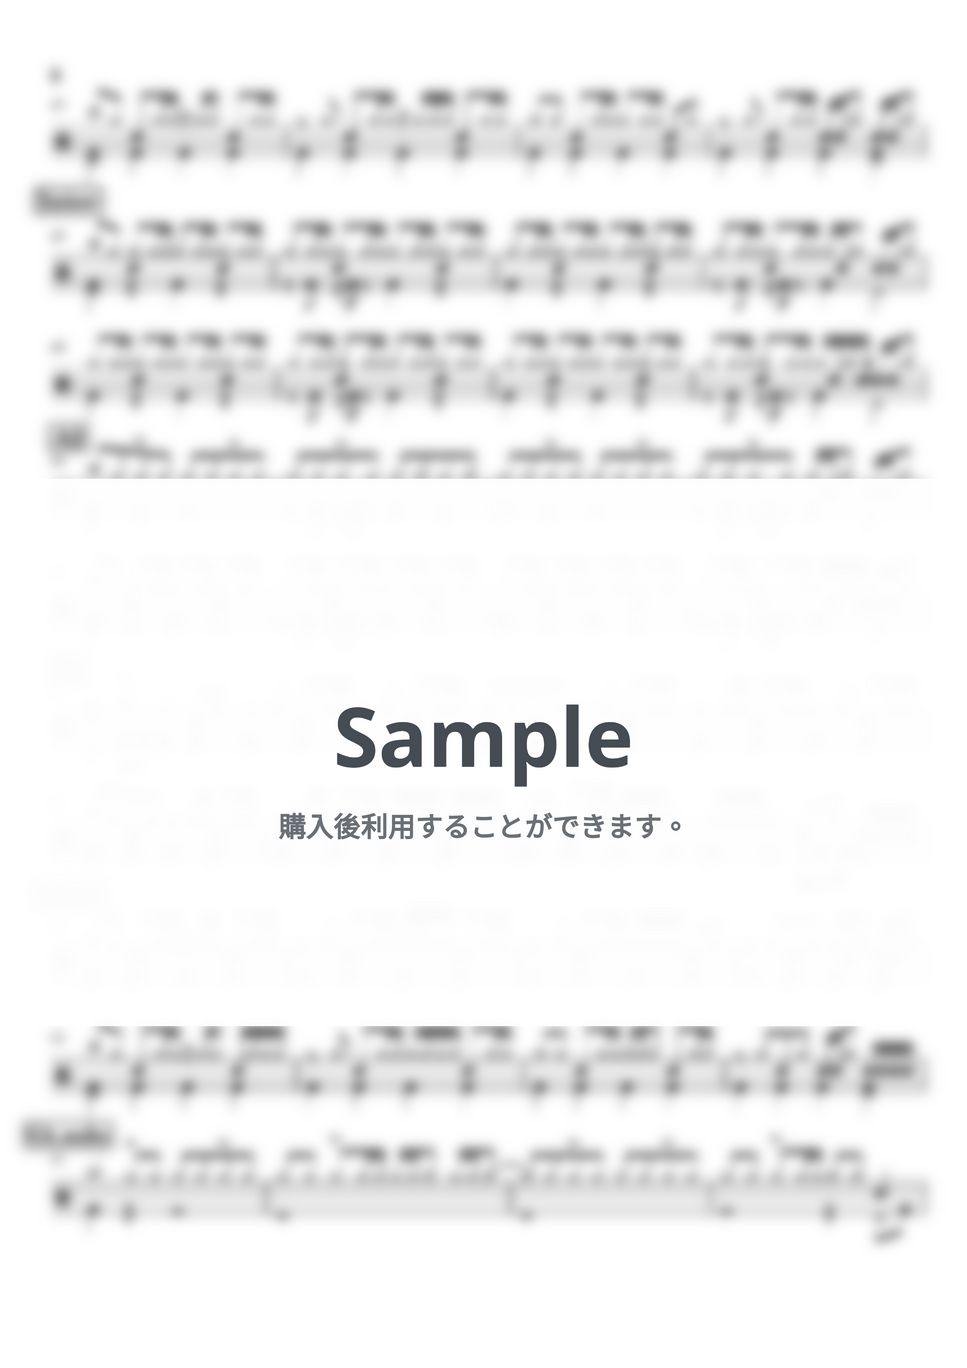 キタニタツヤ - Cinnamon (ドラム譜面) by cabal